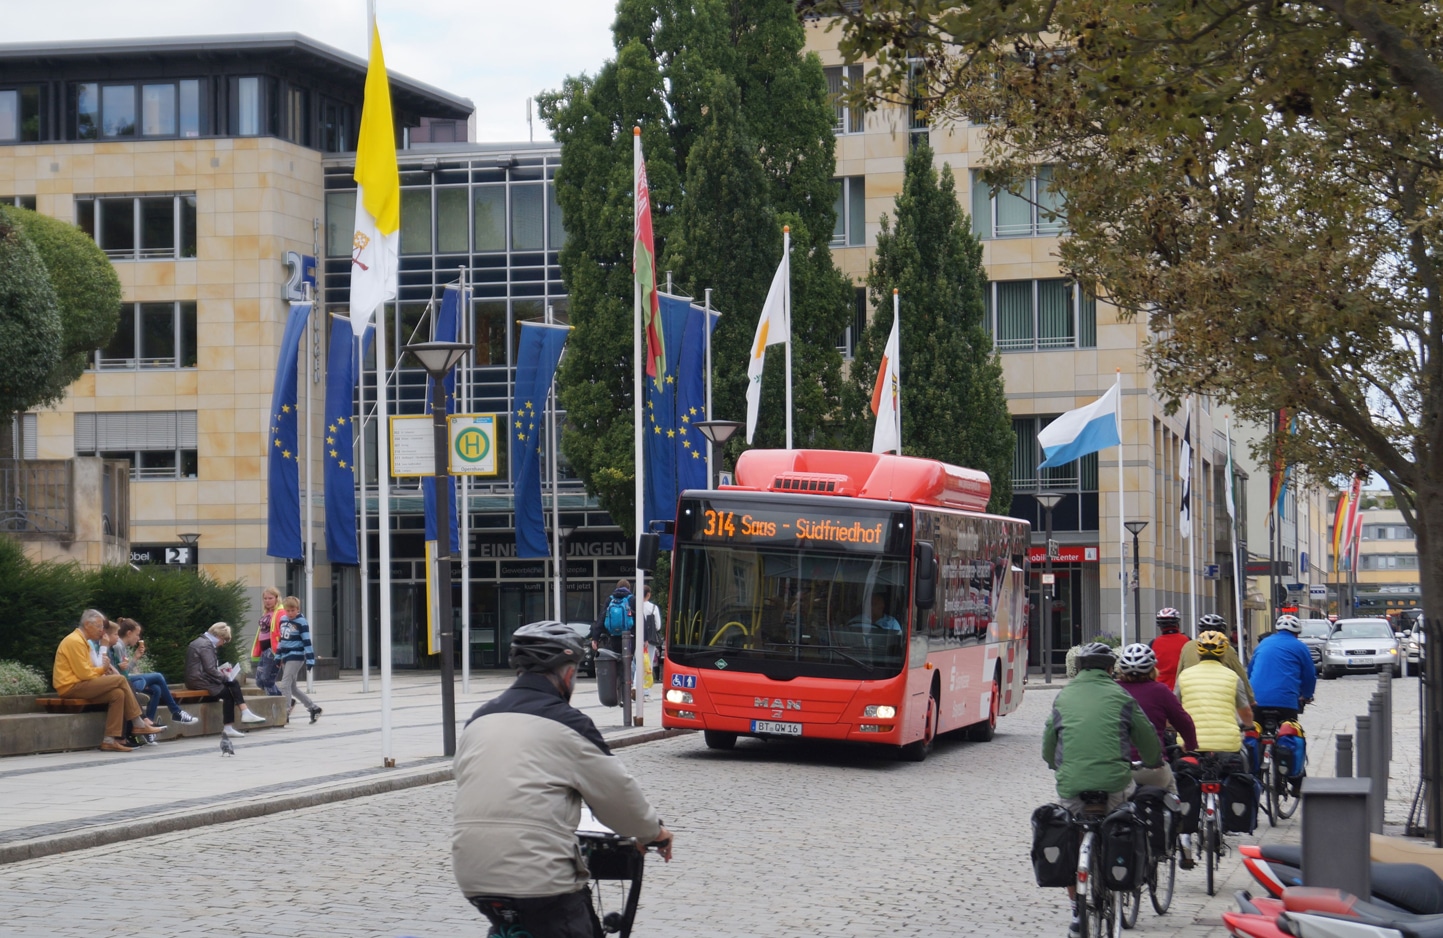 Fahrradfahrer begegnen einem Stadtbus auf einer belebten Straße.